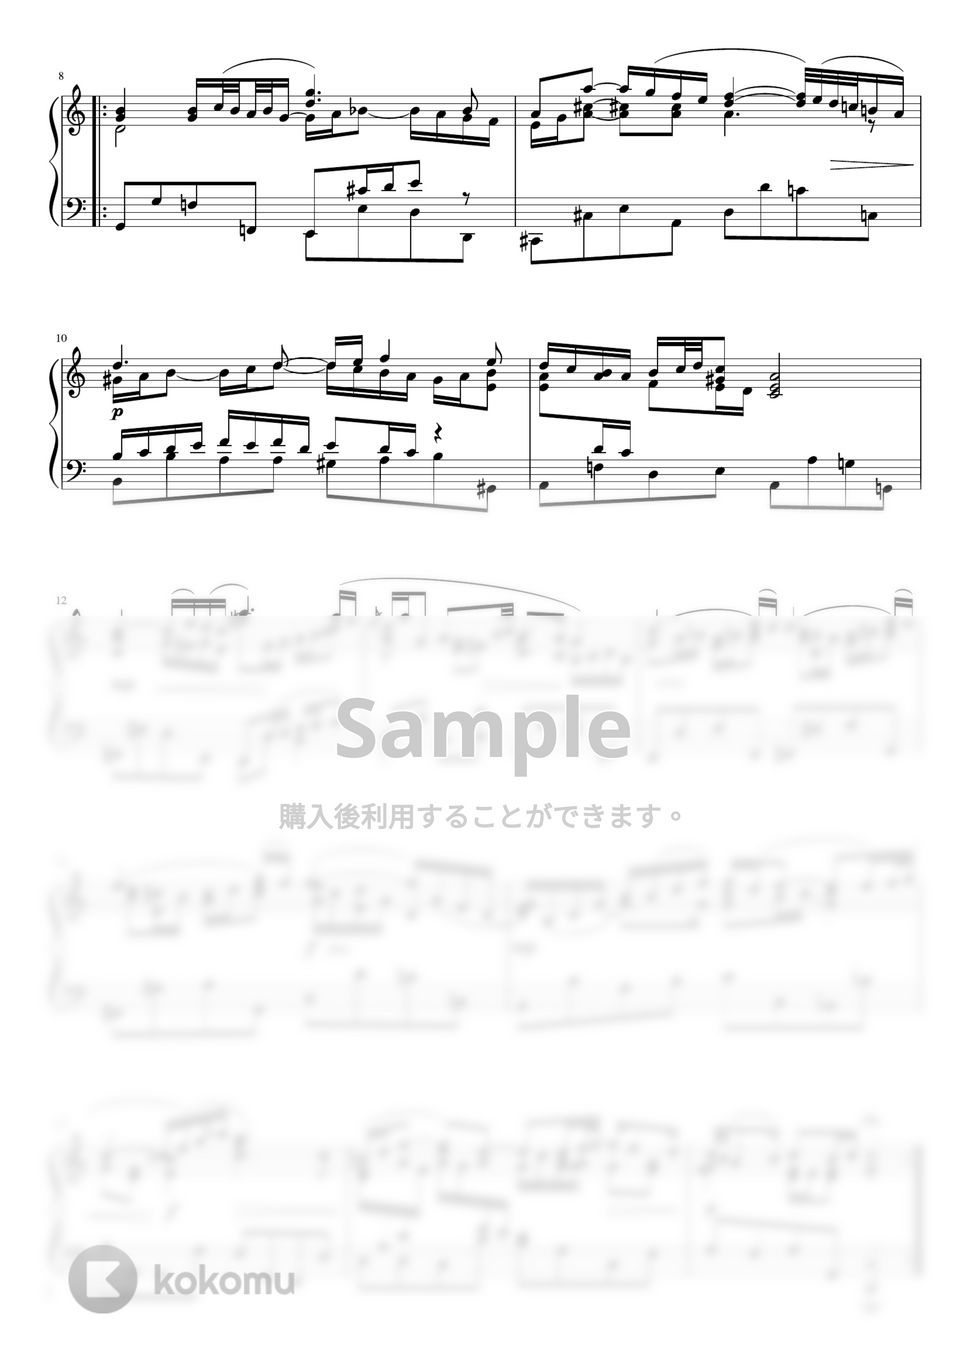 バッハ - G線上のアリア (Cdur・ピアノソロ中級) by pfkaori